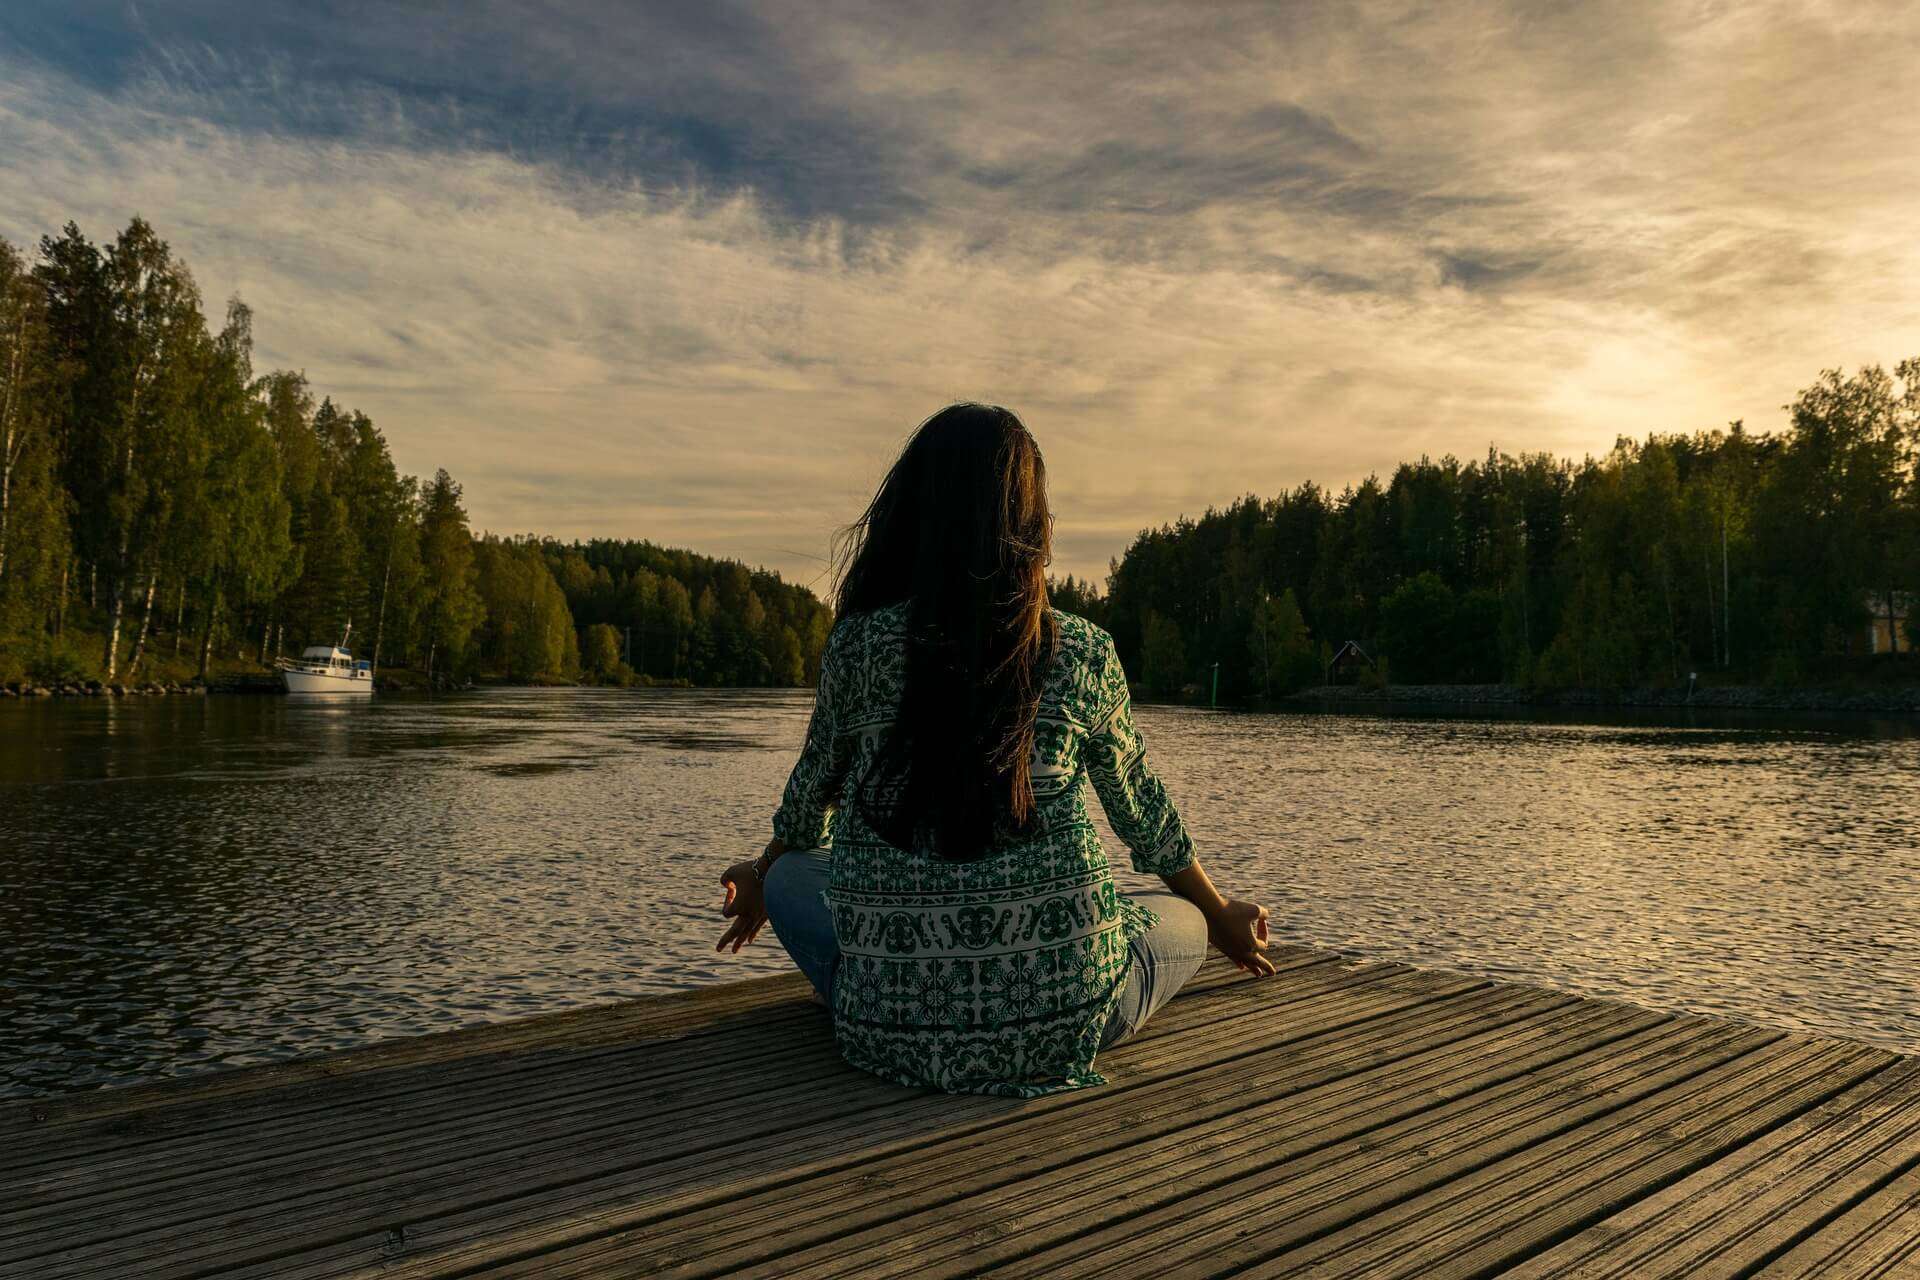 【瞑想効果を高める】 瞑想 のおすすめタイミングと4種の瞑想法